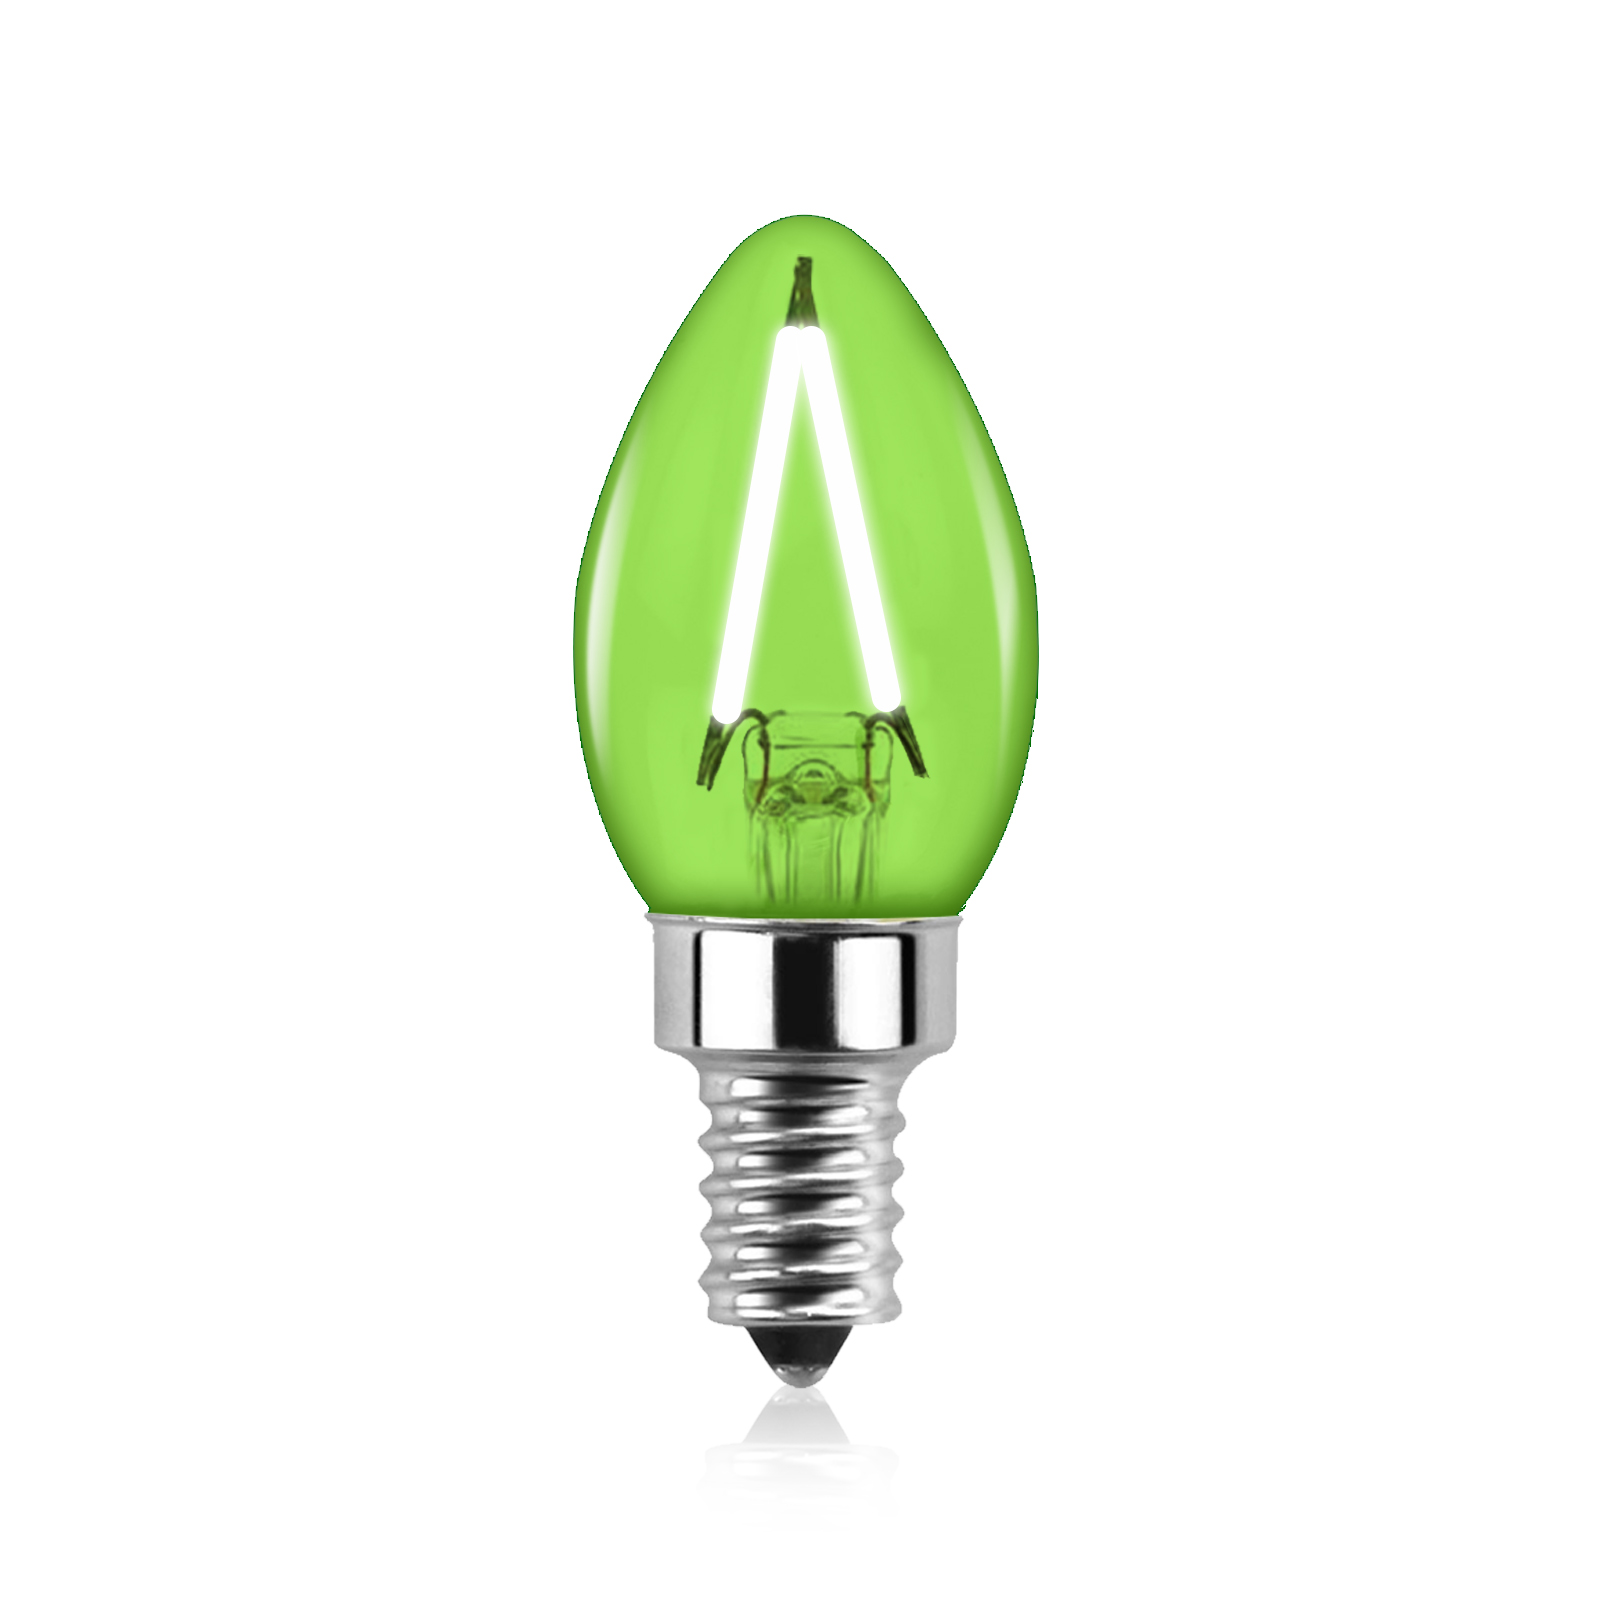 2W C7 E12 LED Green Vintage Light Bulb